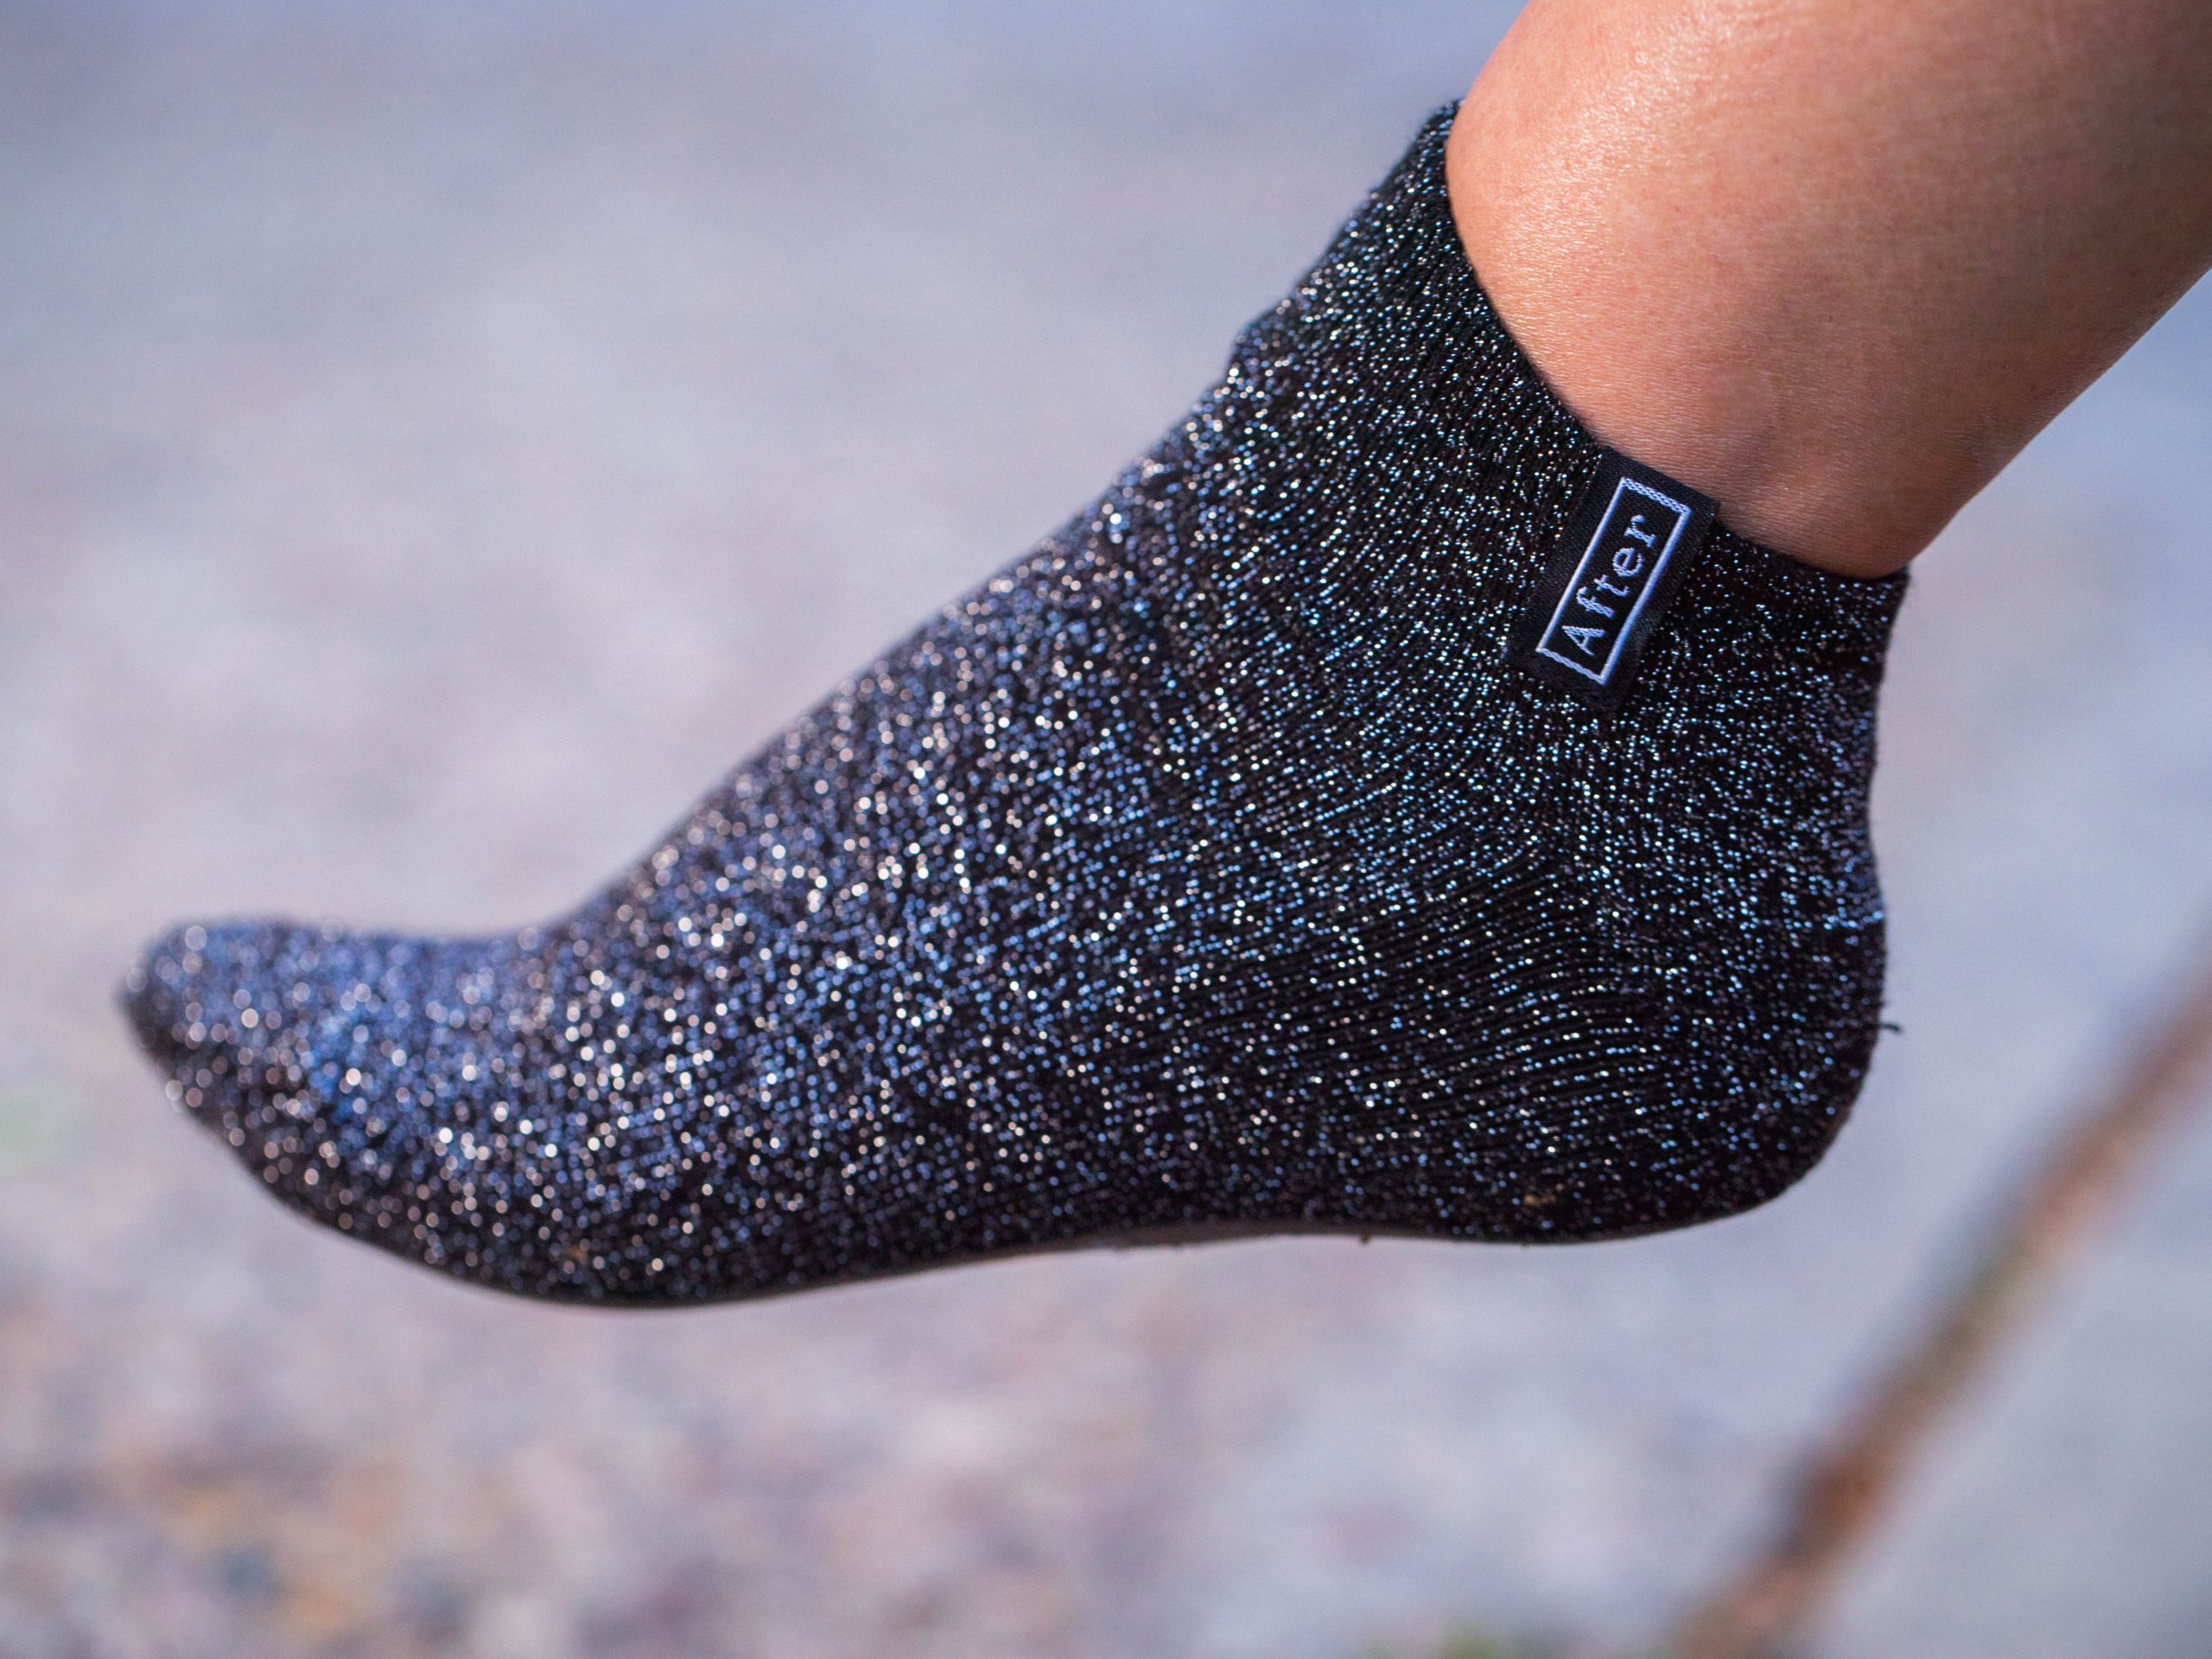 Aftersocks: calcetines para andar descalzo por la calle, zapatos | Business Insider España